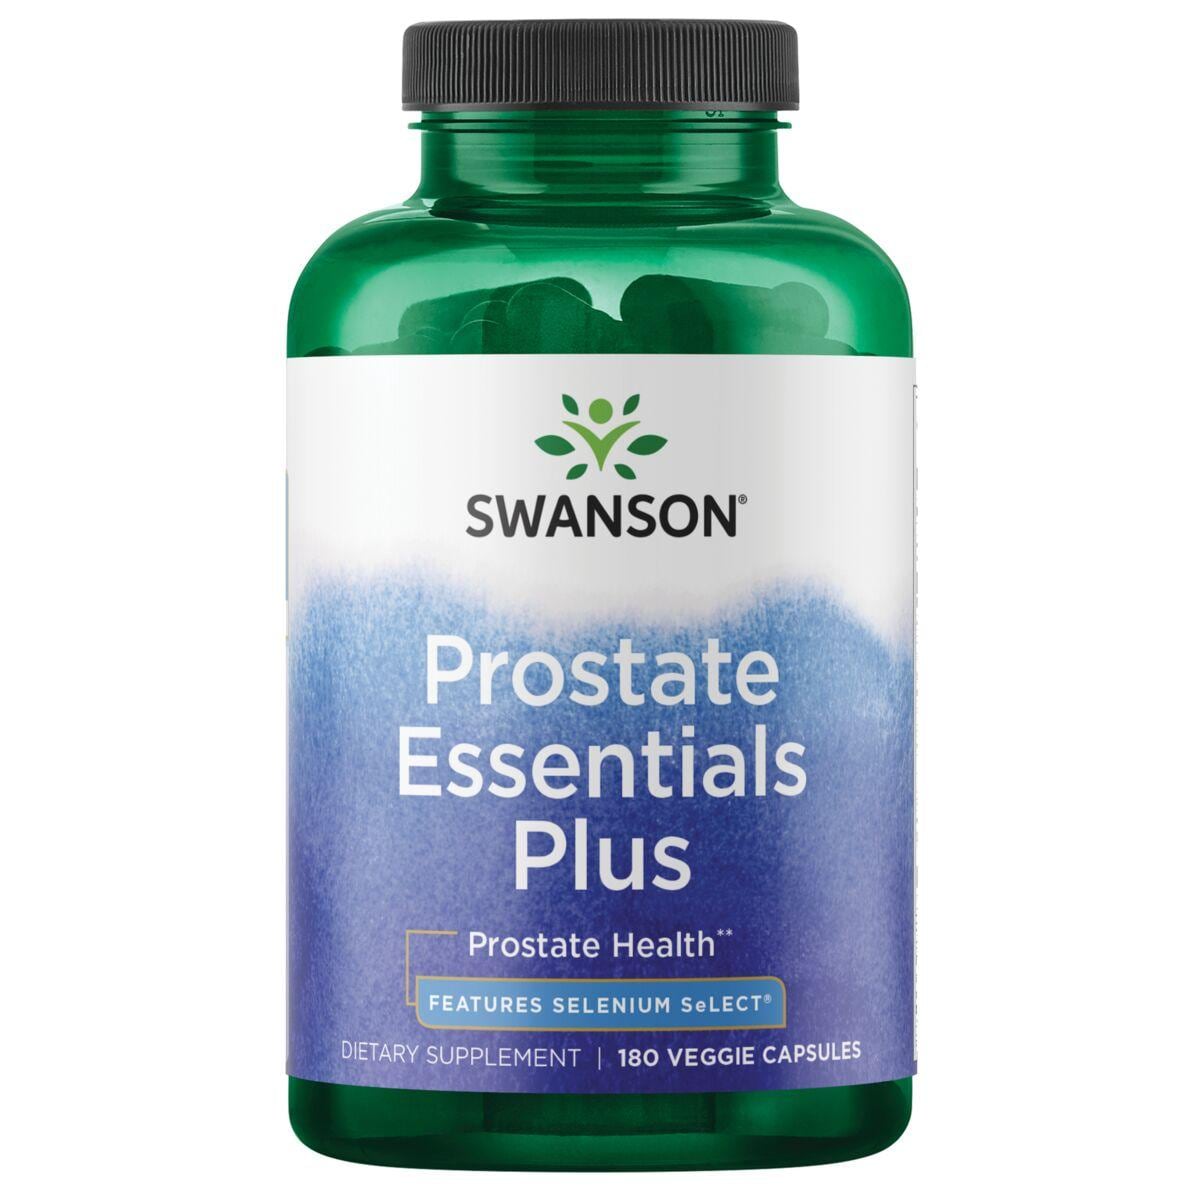 Swanson Condition Specific Formulas Prostate Essentials Plus - Features Selenium Select Vitamin | 180 Veg Caps